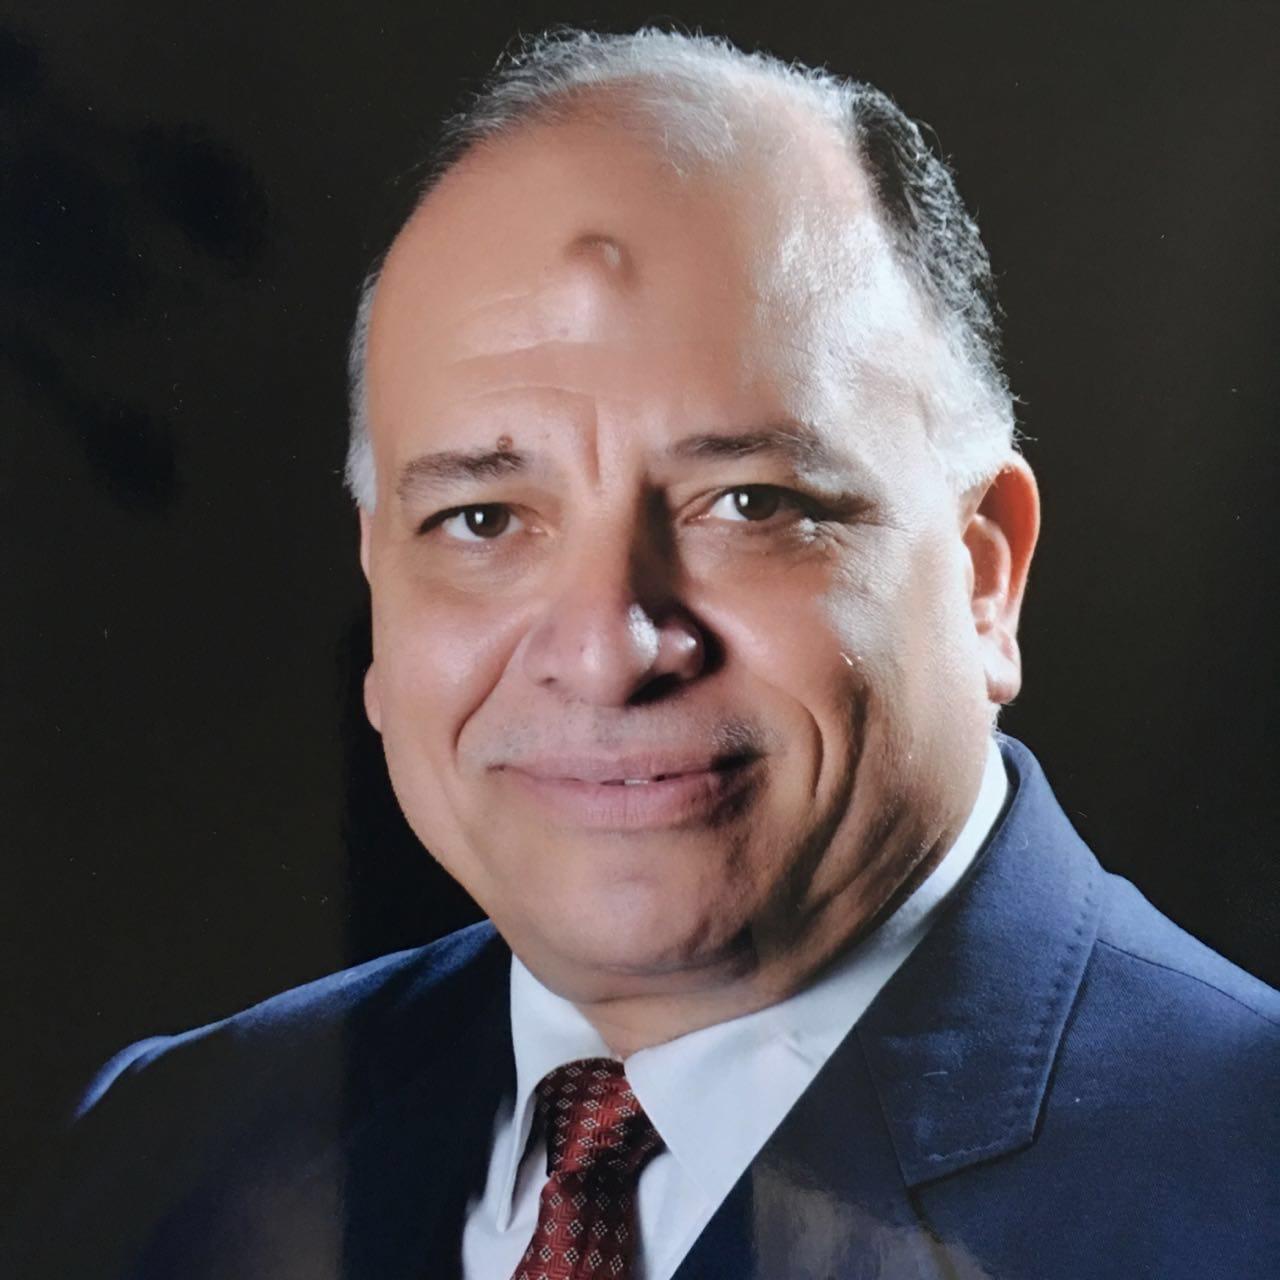 المهندس محمد سعيد محروس، رئيس الشركة القابضة للمطا